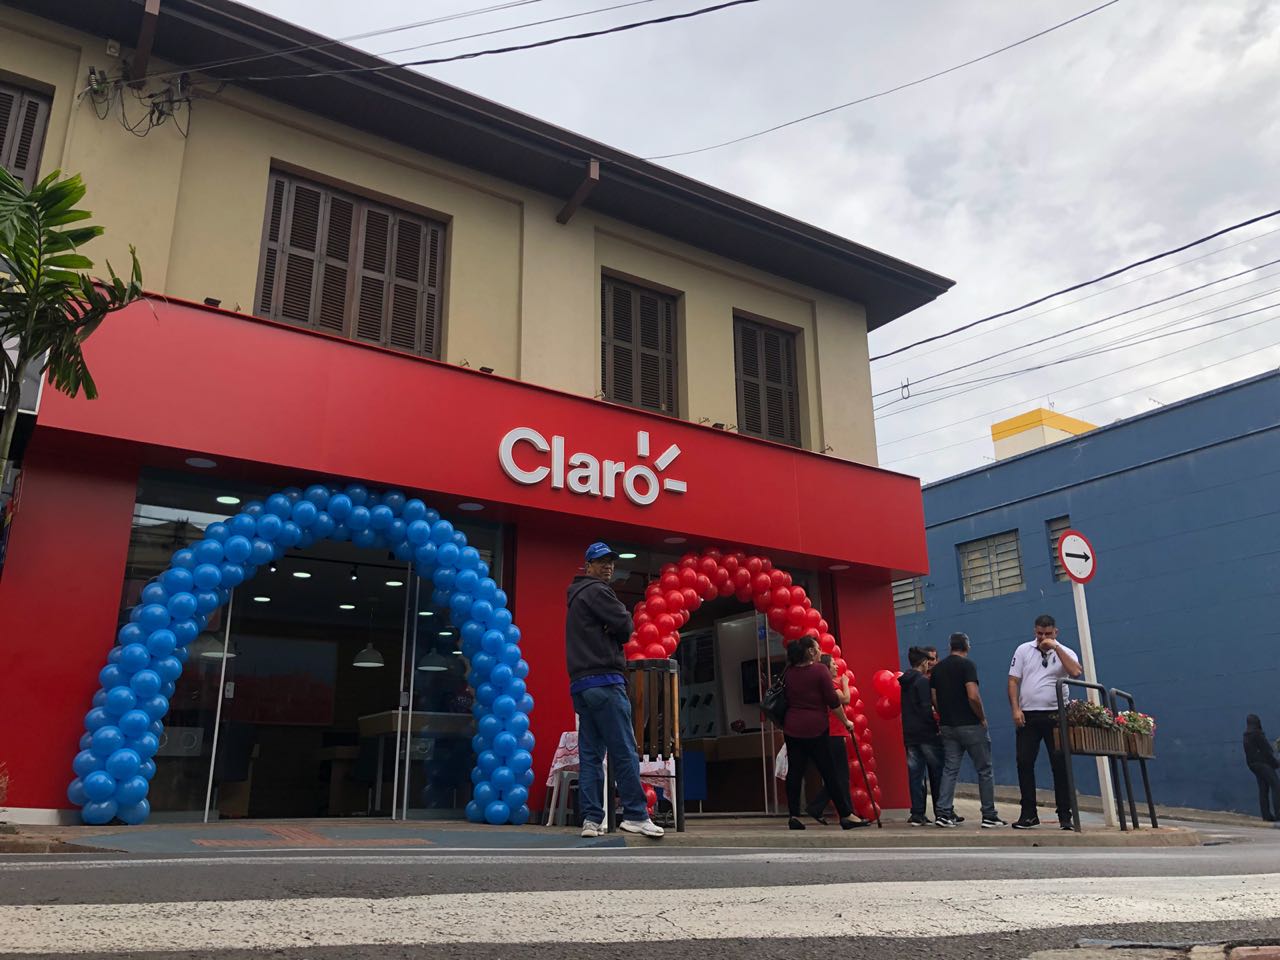 Claro inaugura moderna loja no centro de Botucatu | Jornal Acontece Botucatu